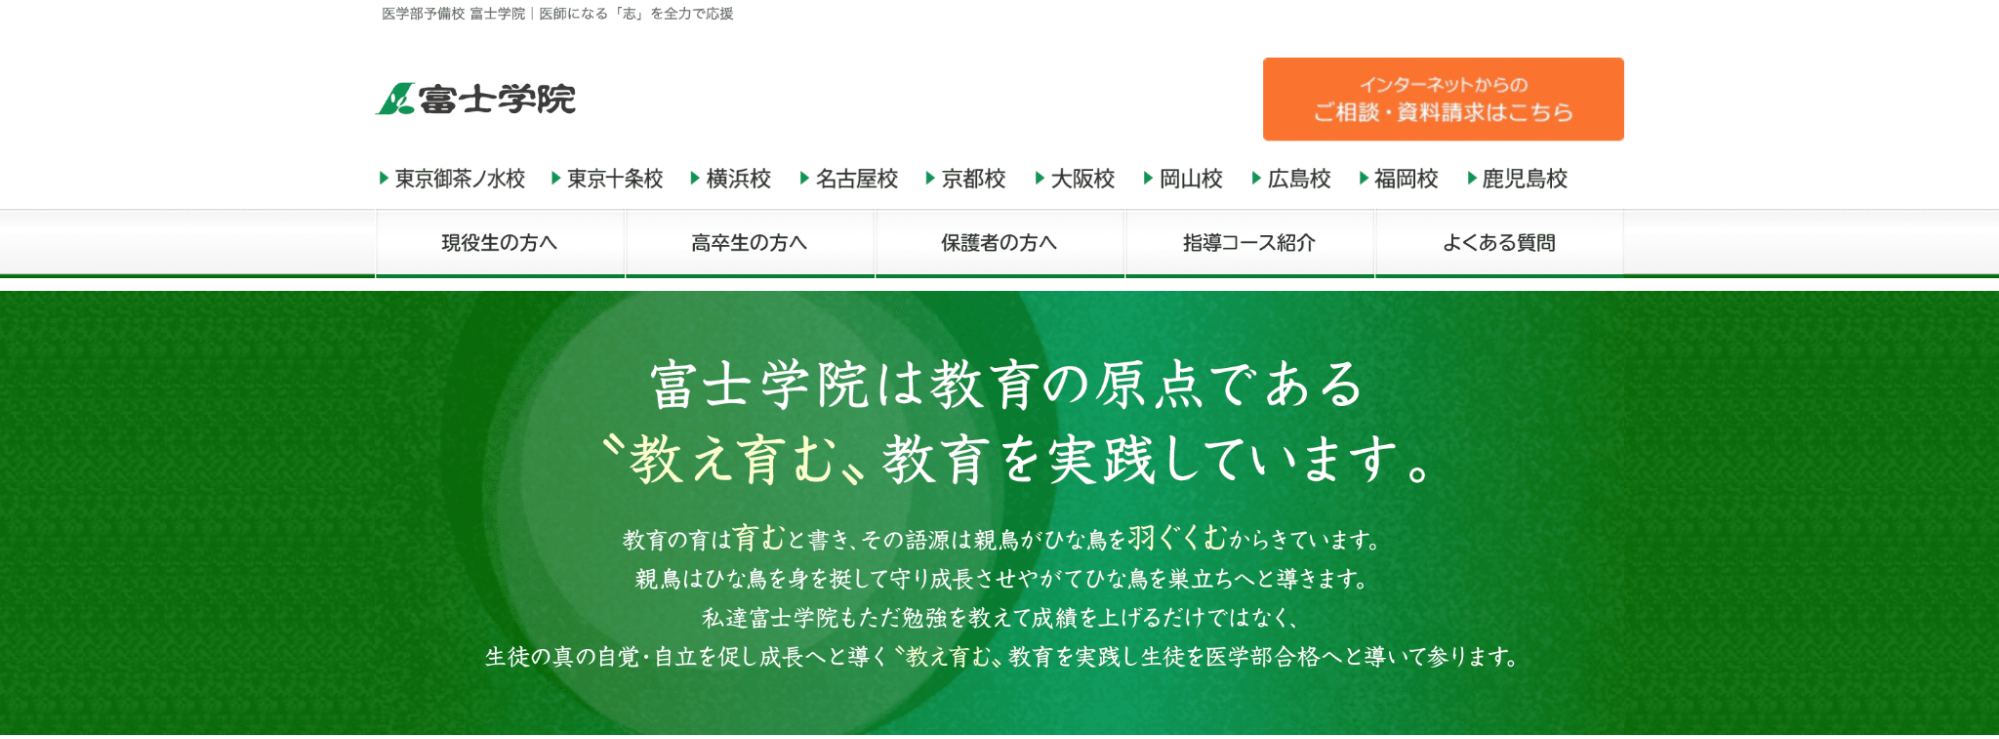 富士学院公式サイト画像